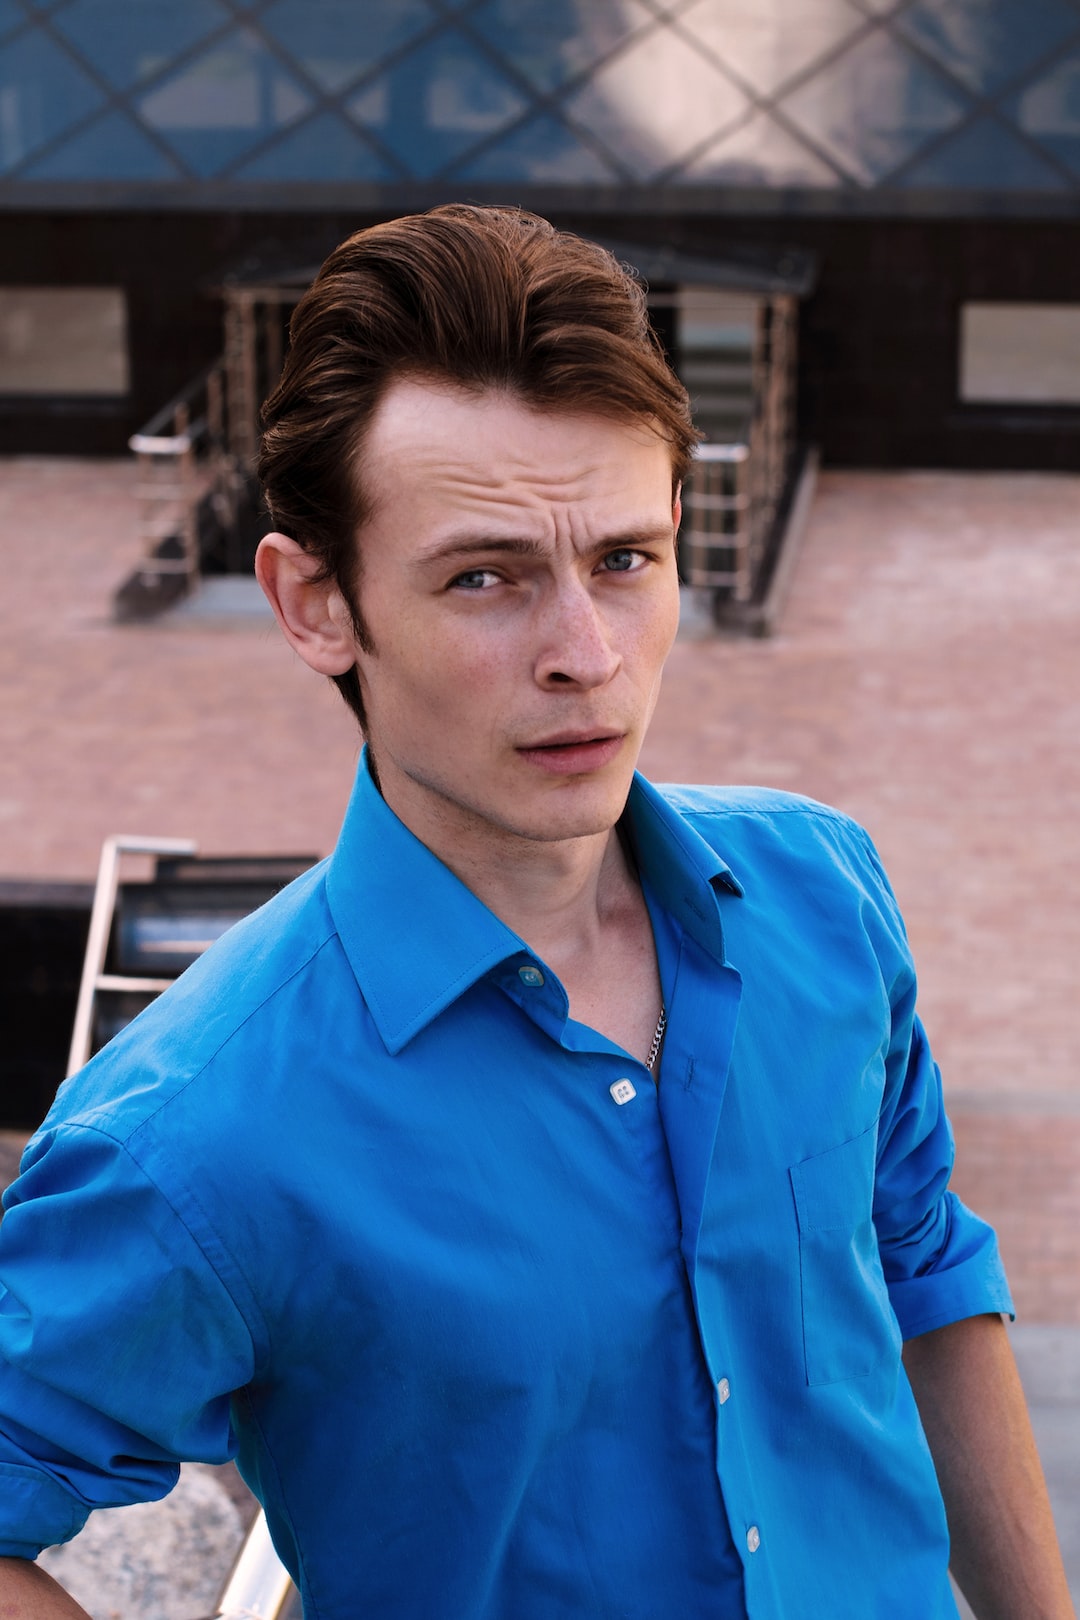 man in blue dress shirt at daytime